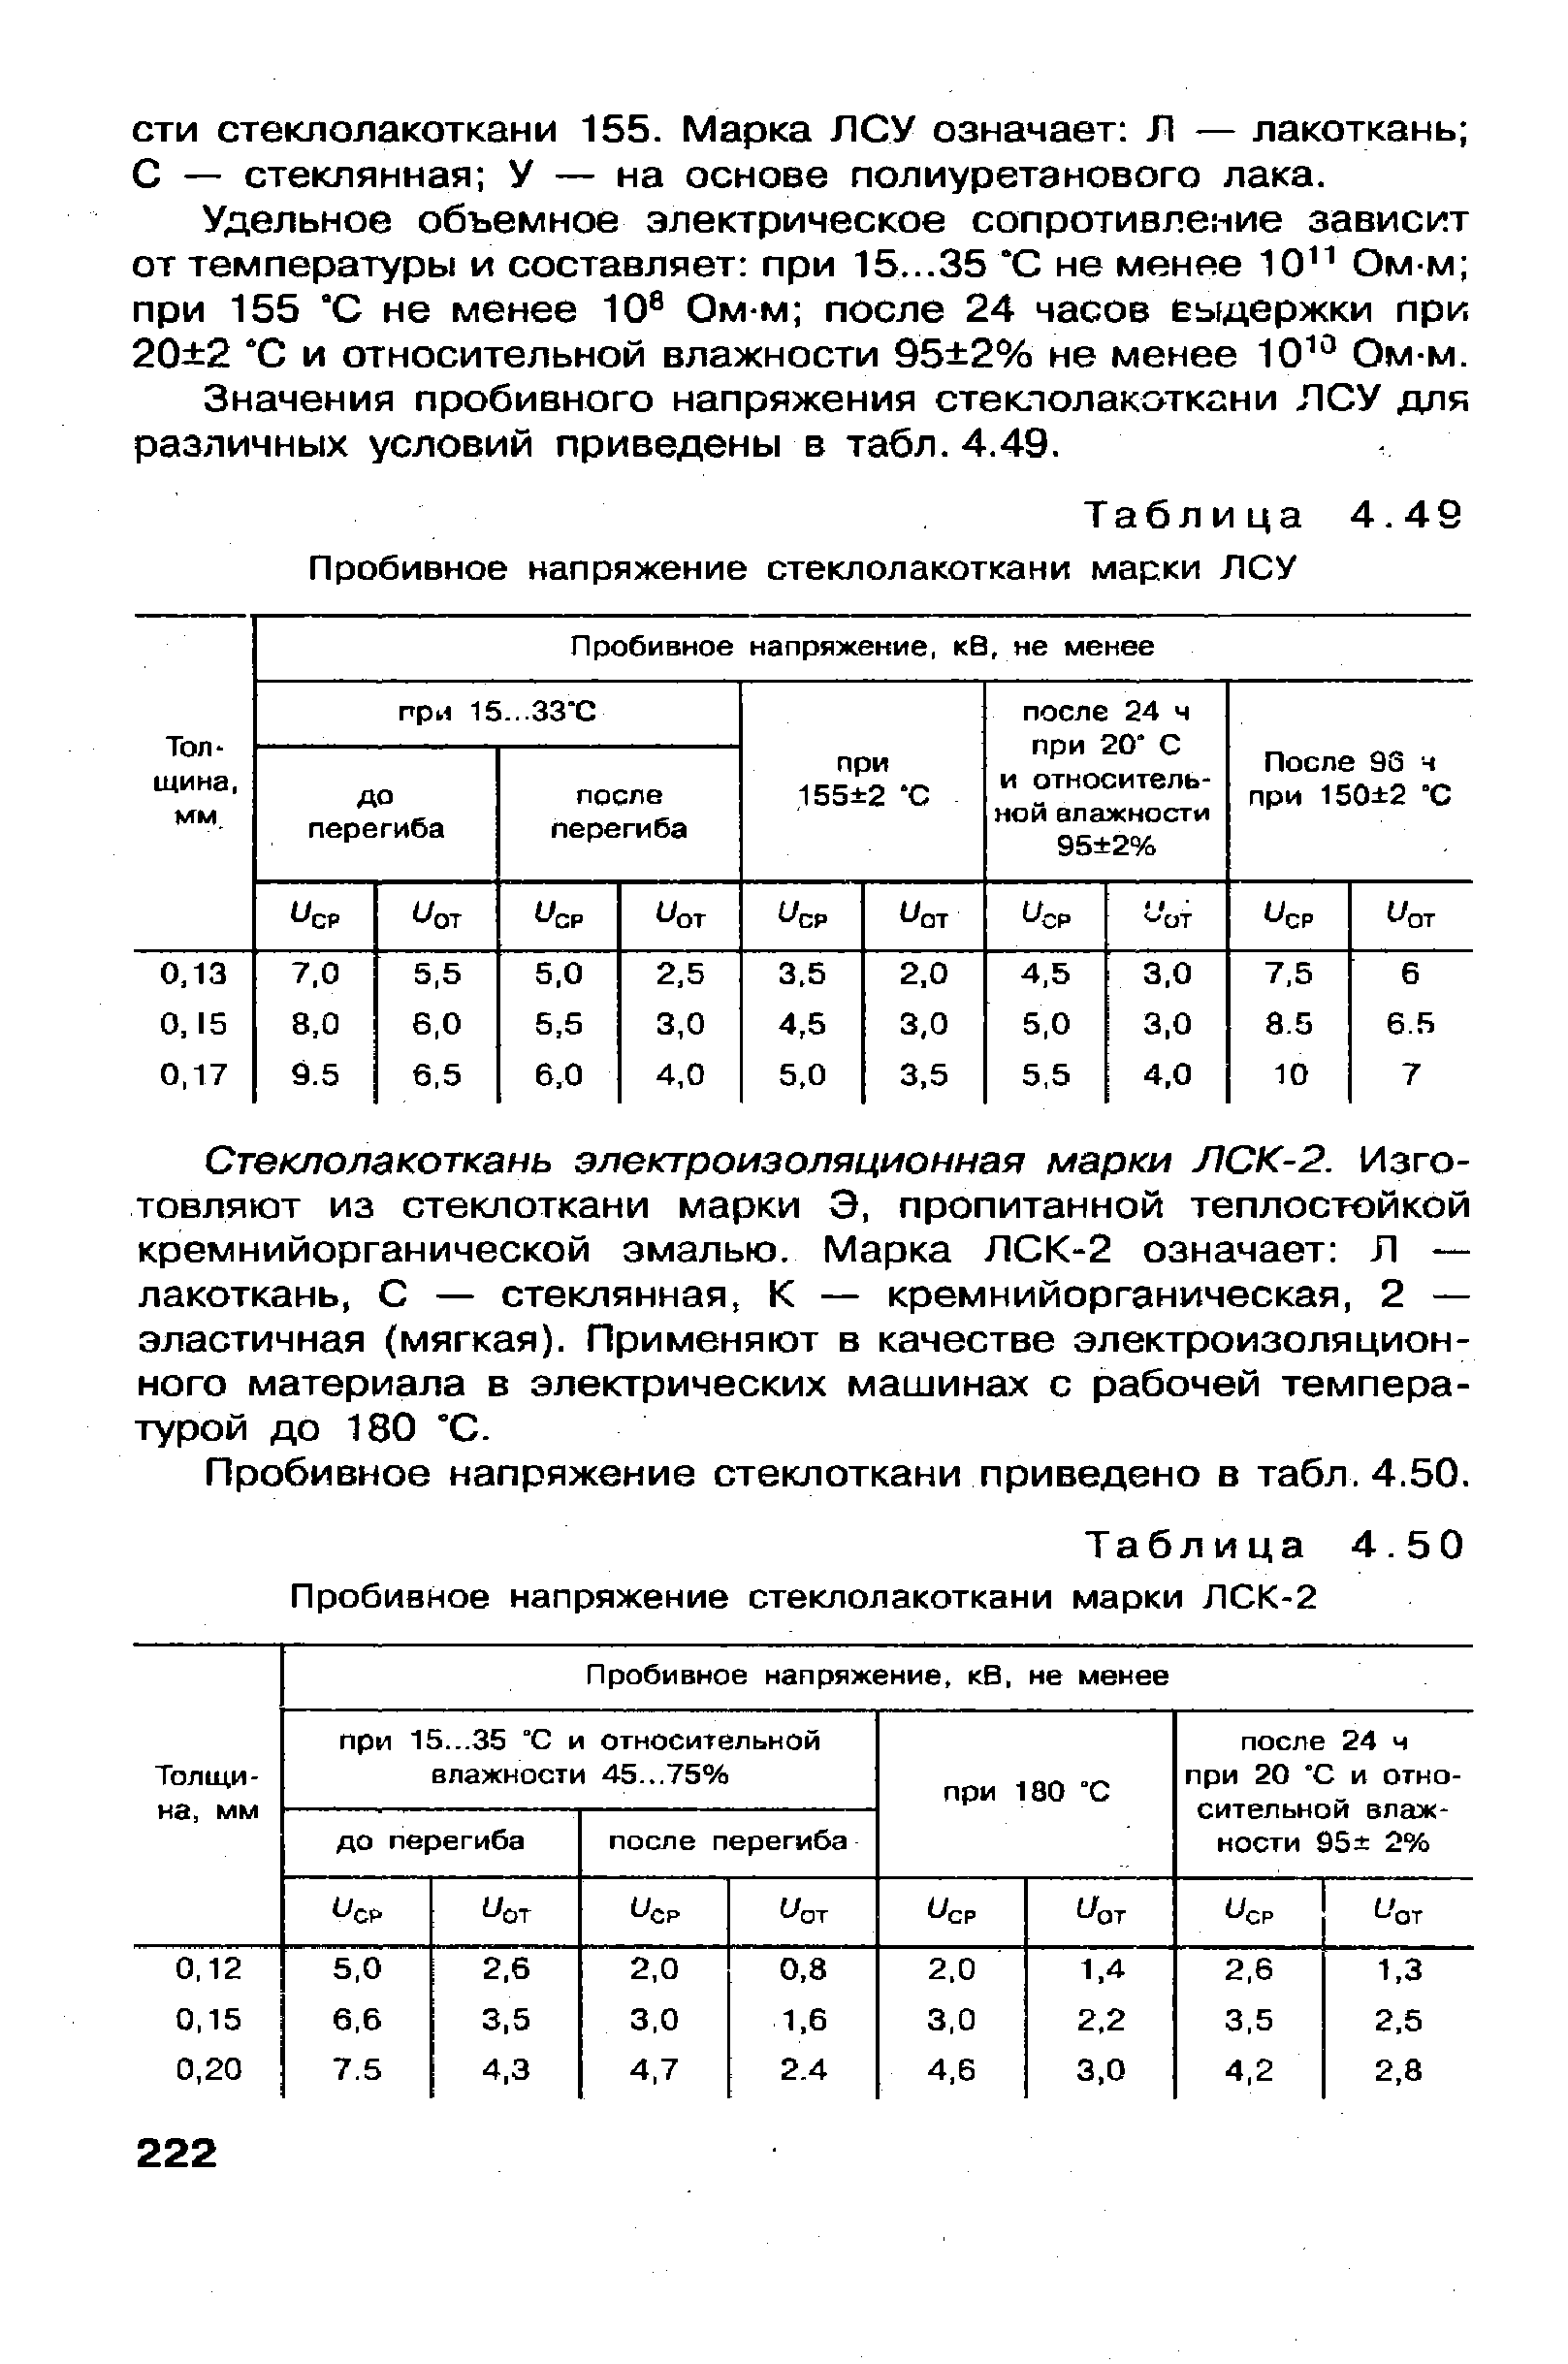 Таблица 4.50 <a href="/info/190672">Пробивное напряжение стеклолакоткани</a> марки ЛСК-2
